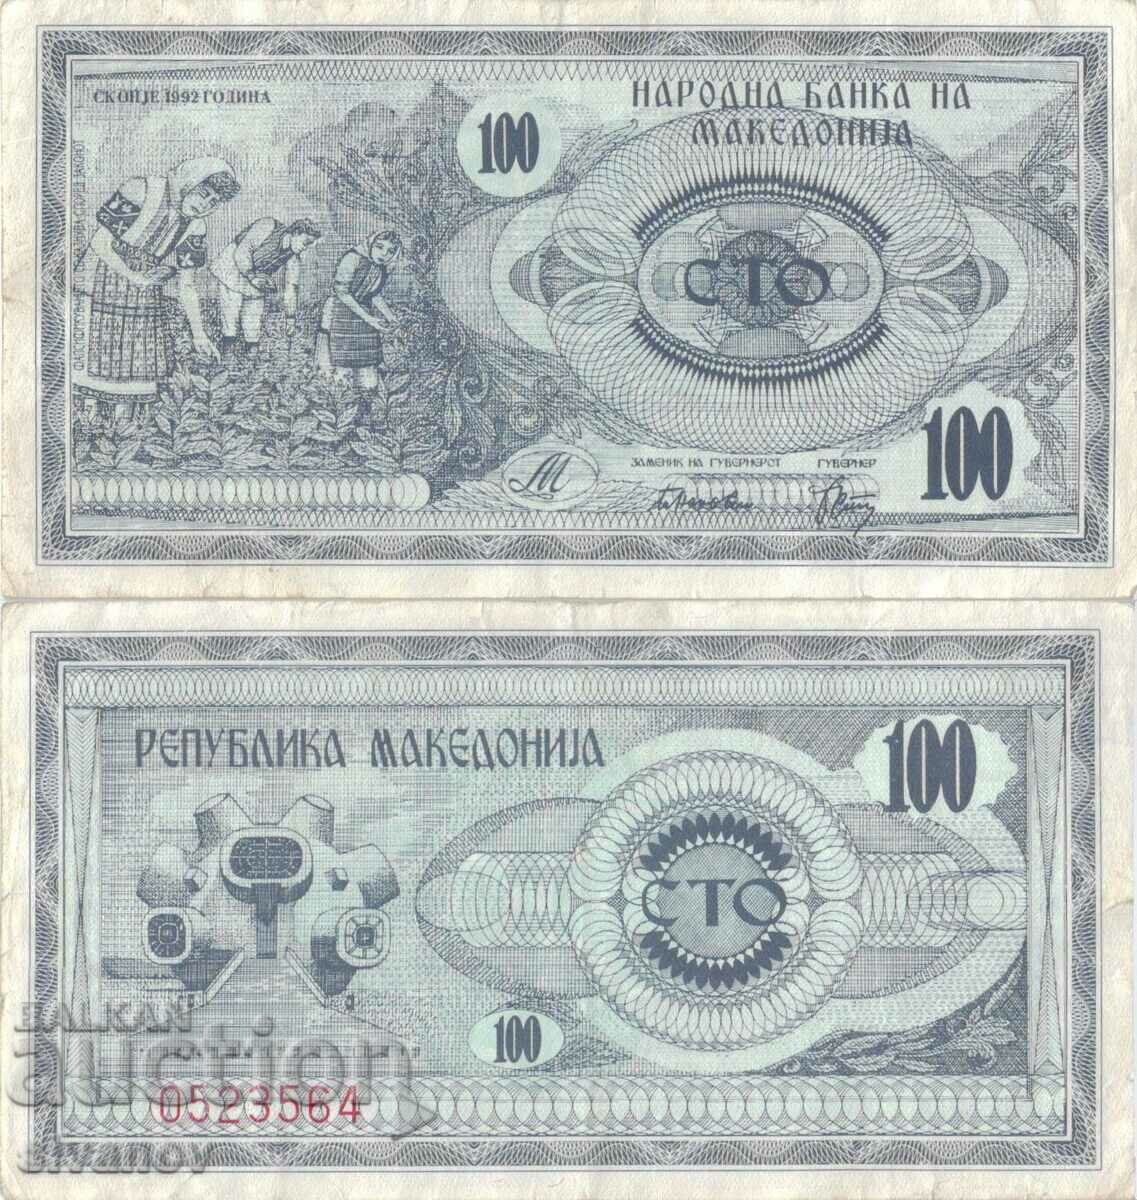 Μακεδονία 100 denar τραπεζογραμμάτιο 1992 #5210